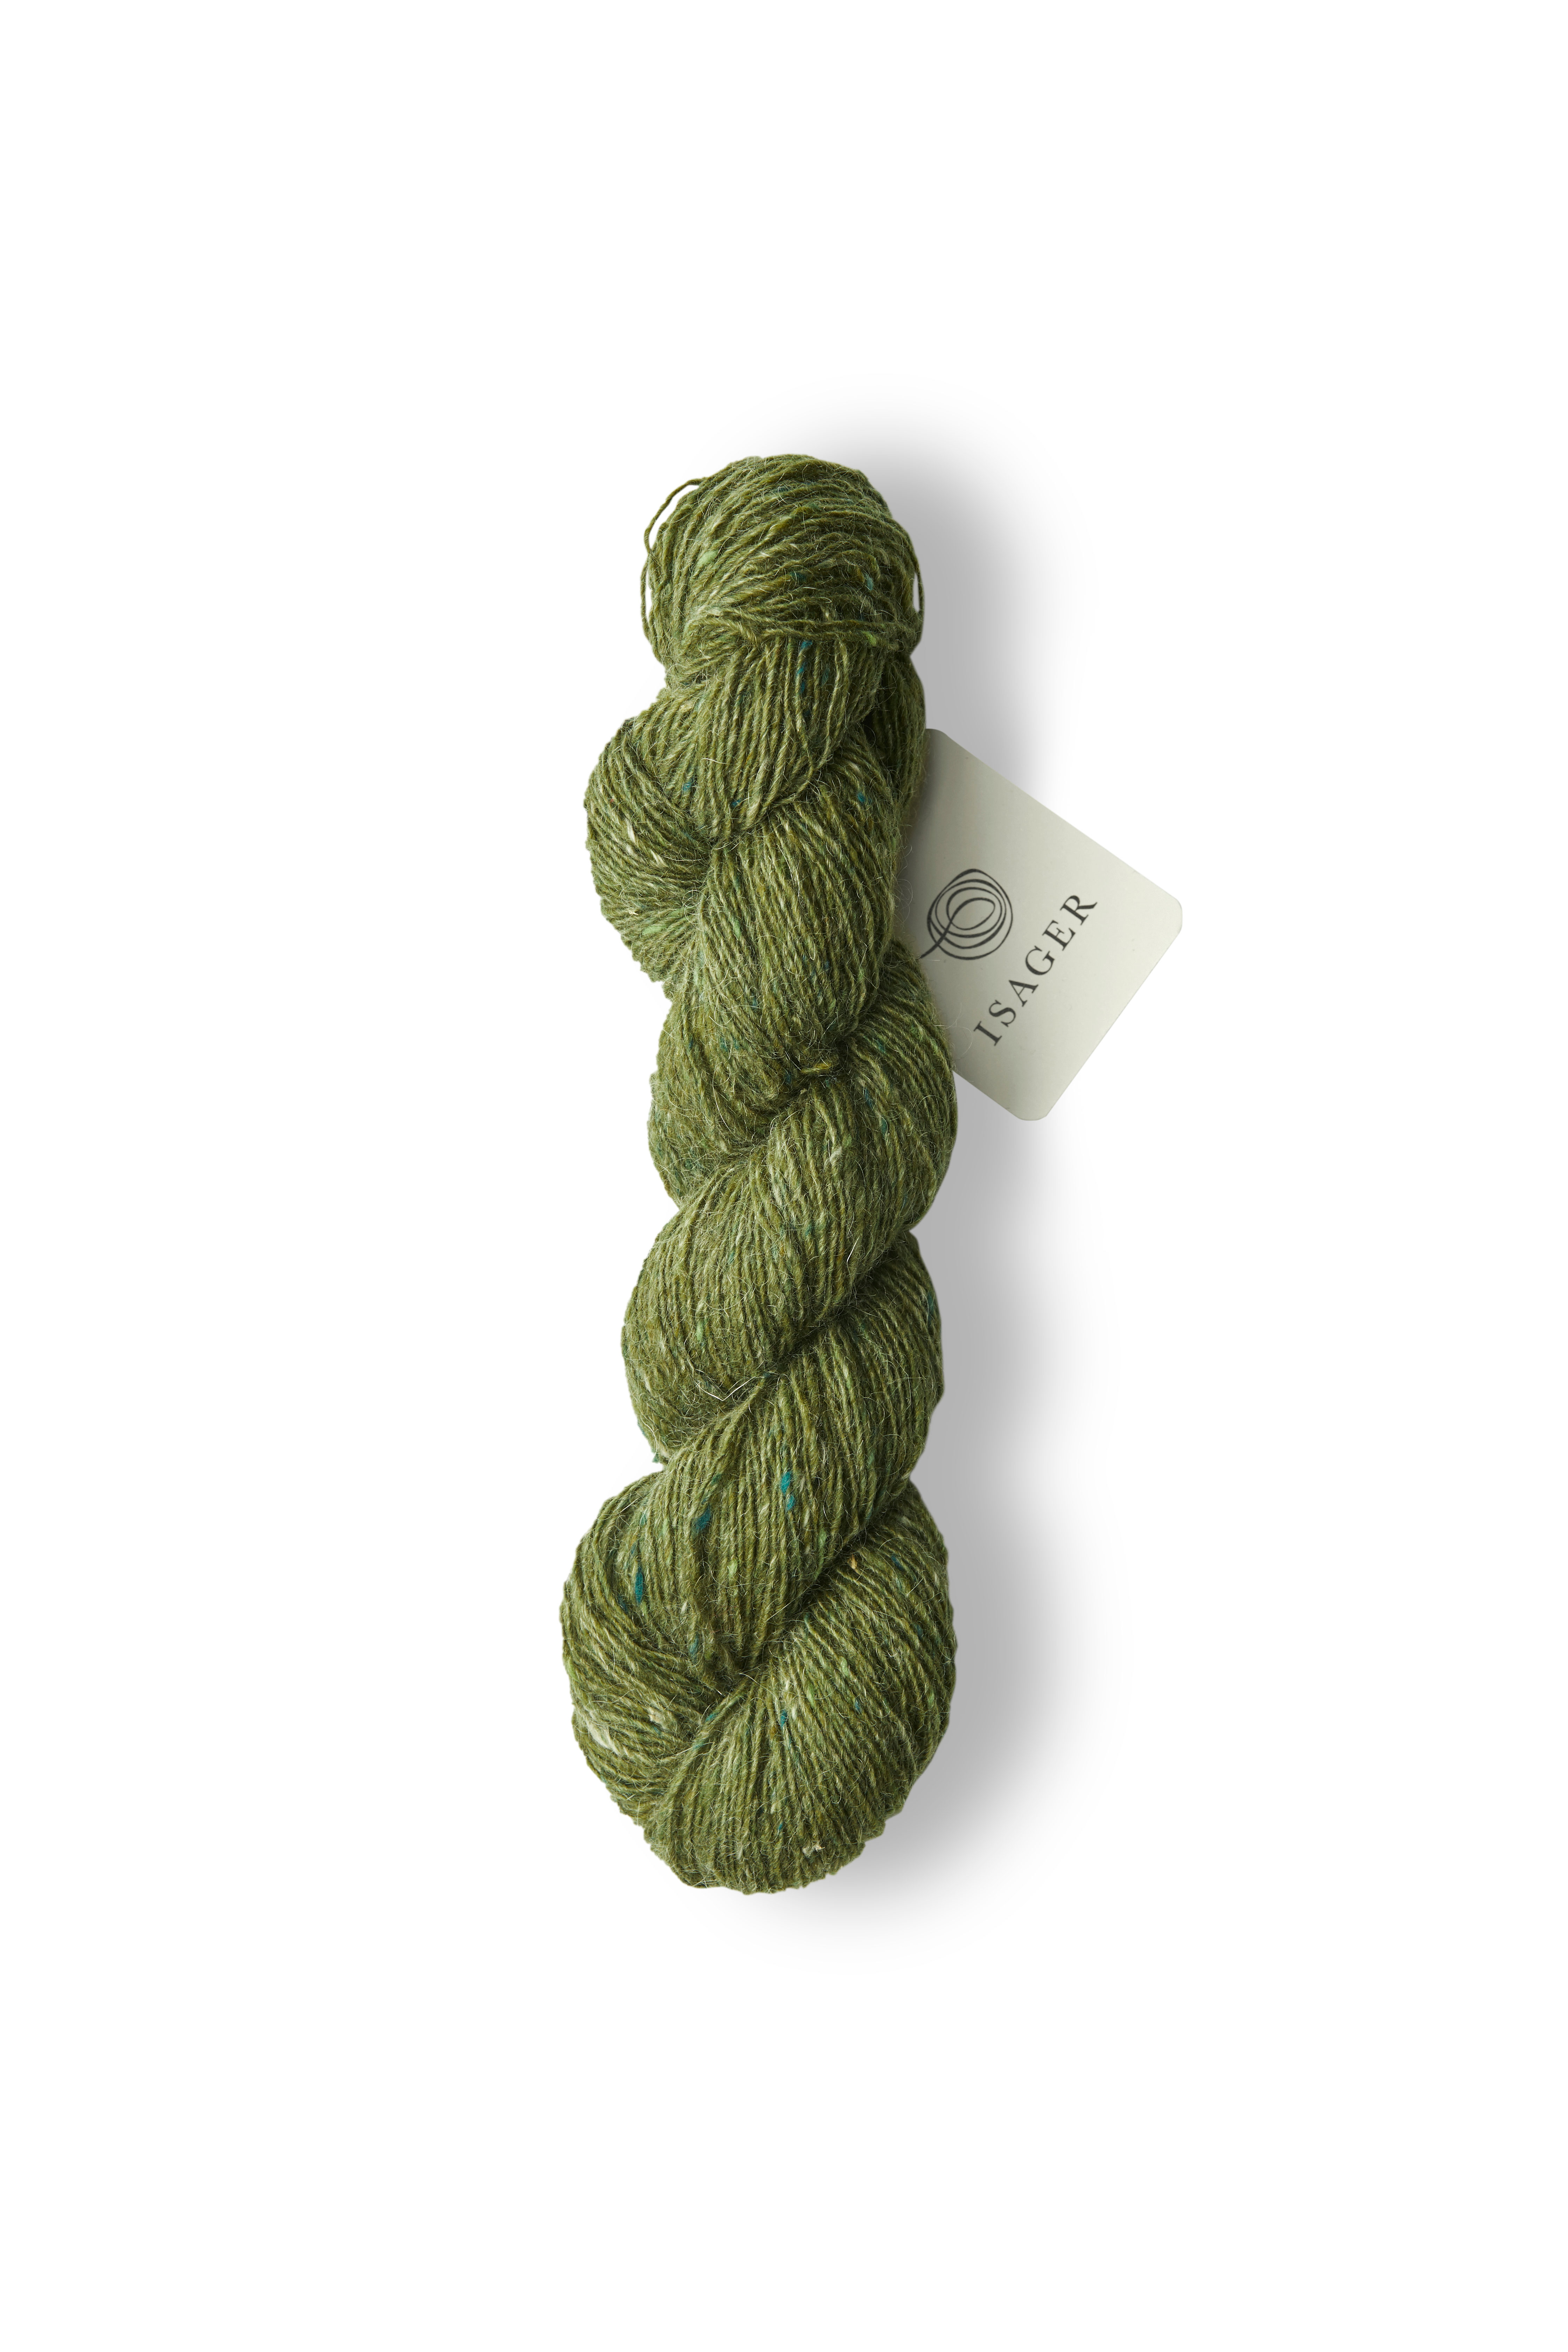 Tweed - Moss